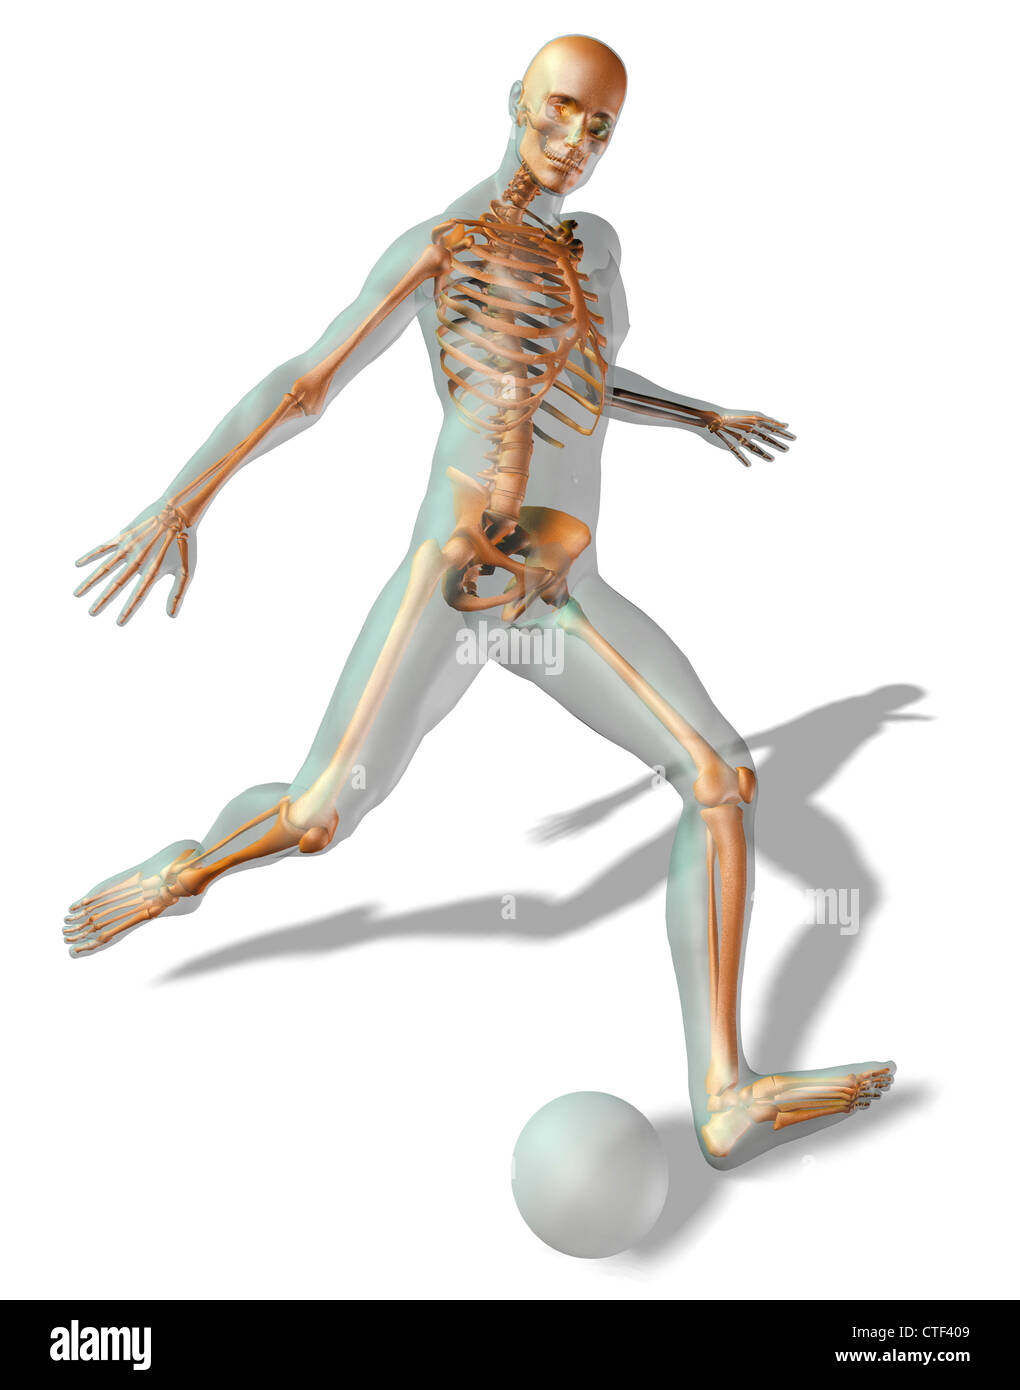 Generati digitalmente immagine della rappresentazione umana gioca palla calcio con scheletro umano visibile Foto Stock